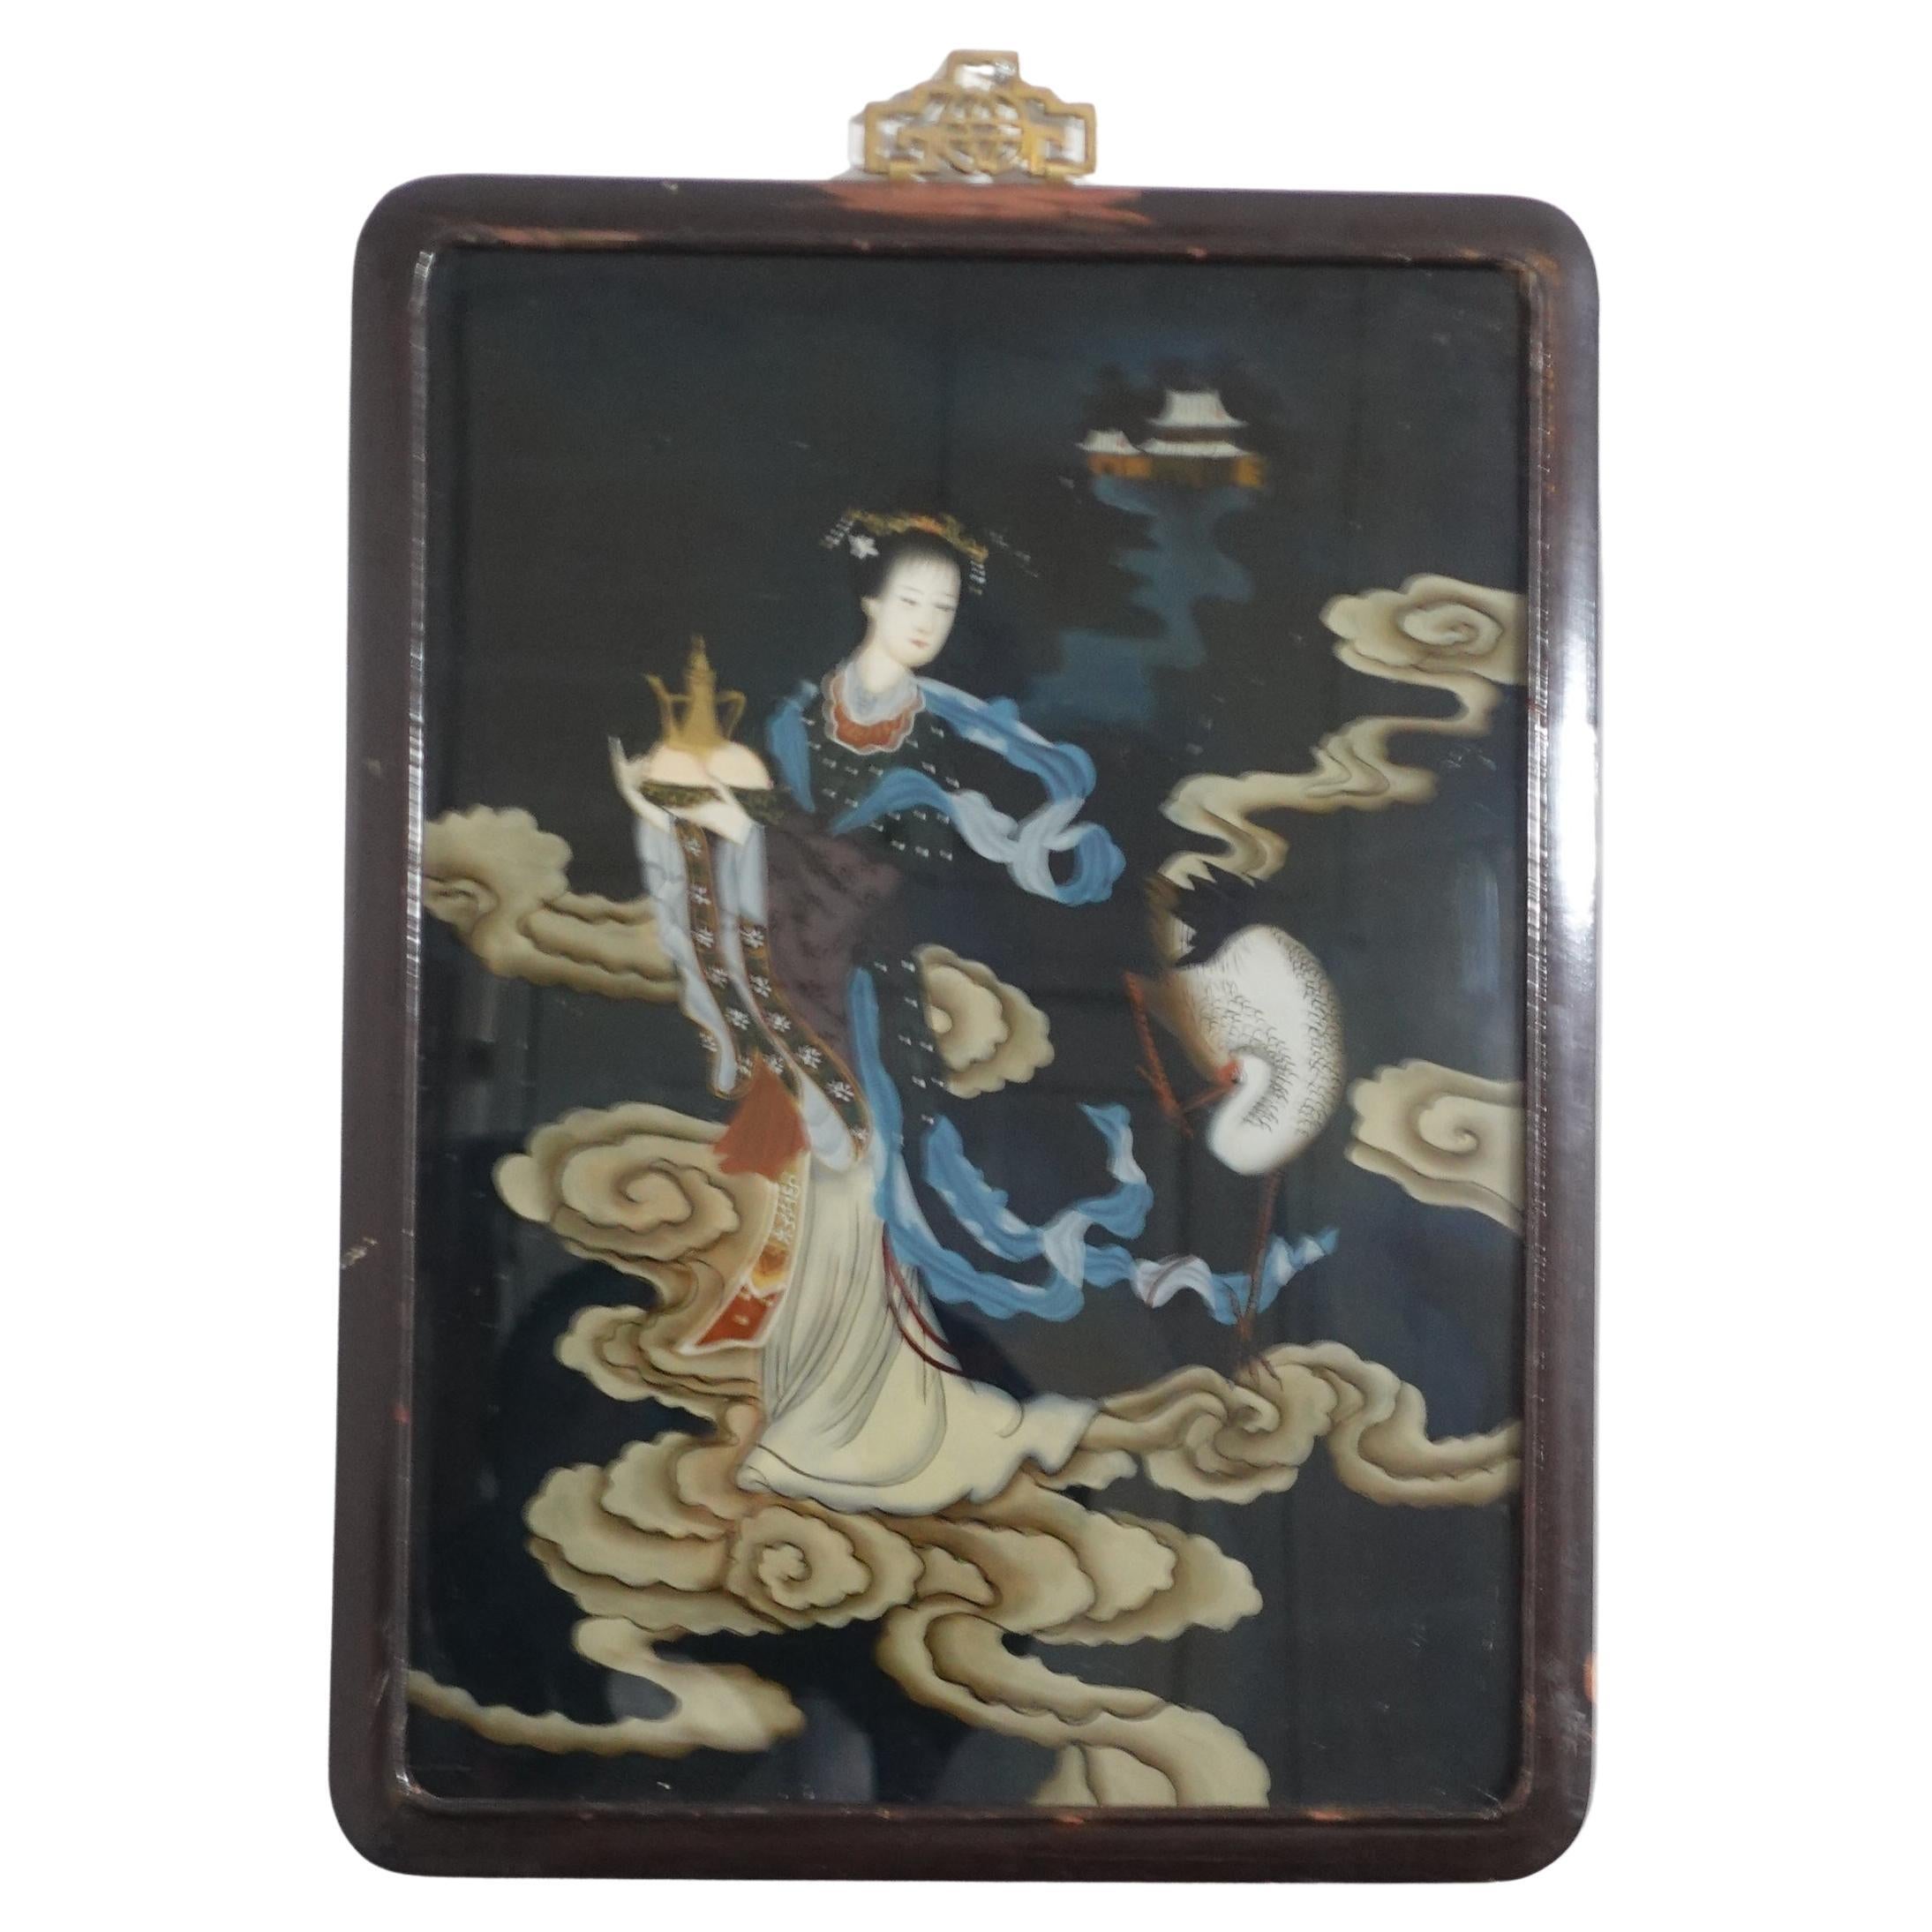 Peinture inversée d'exportation chinoise ancienne sur verre - Une femme volant au ciel